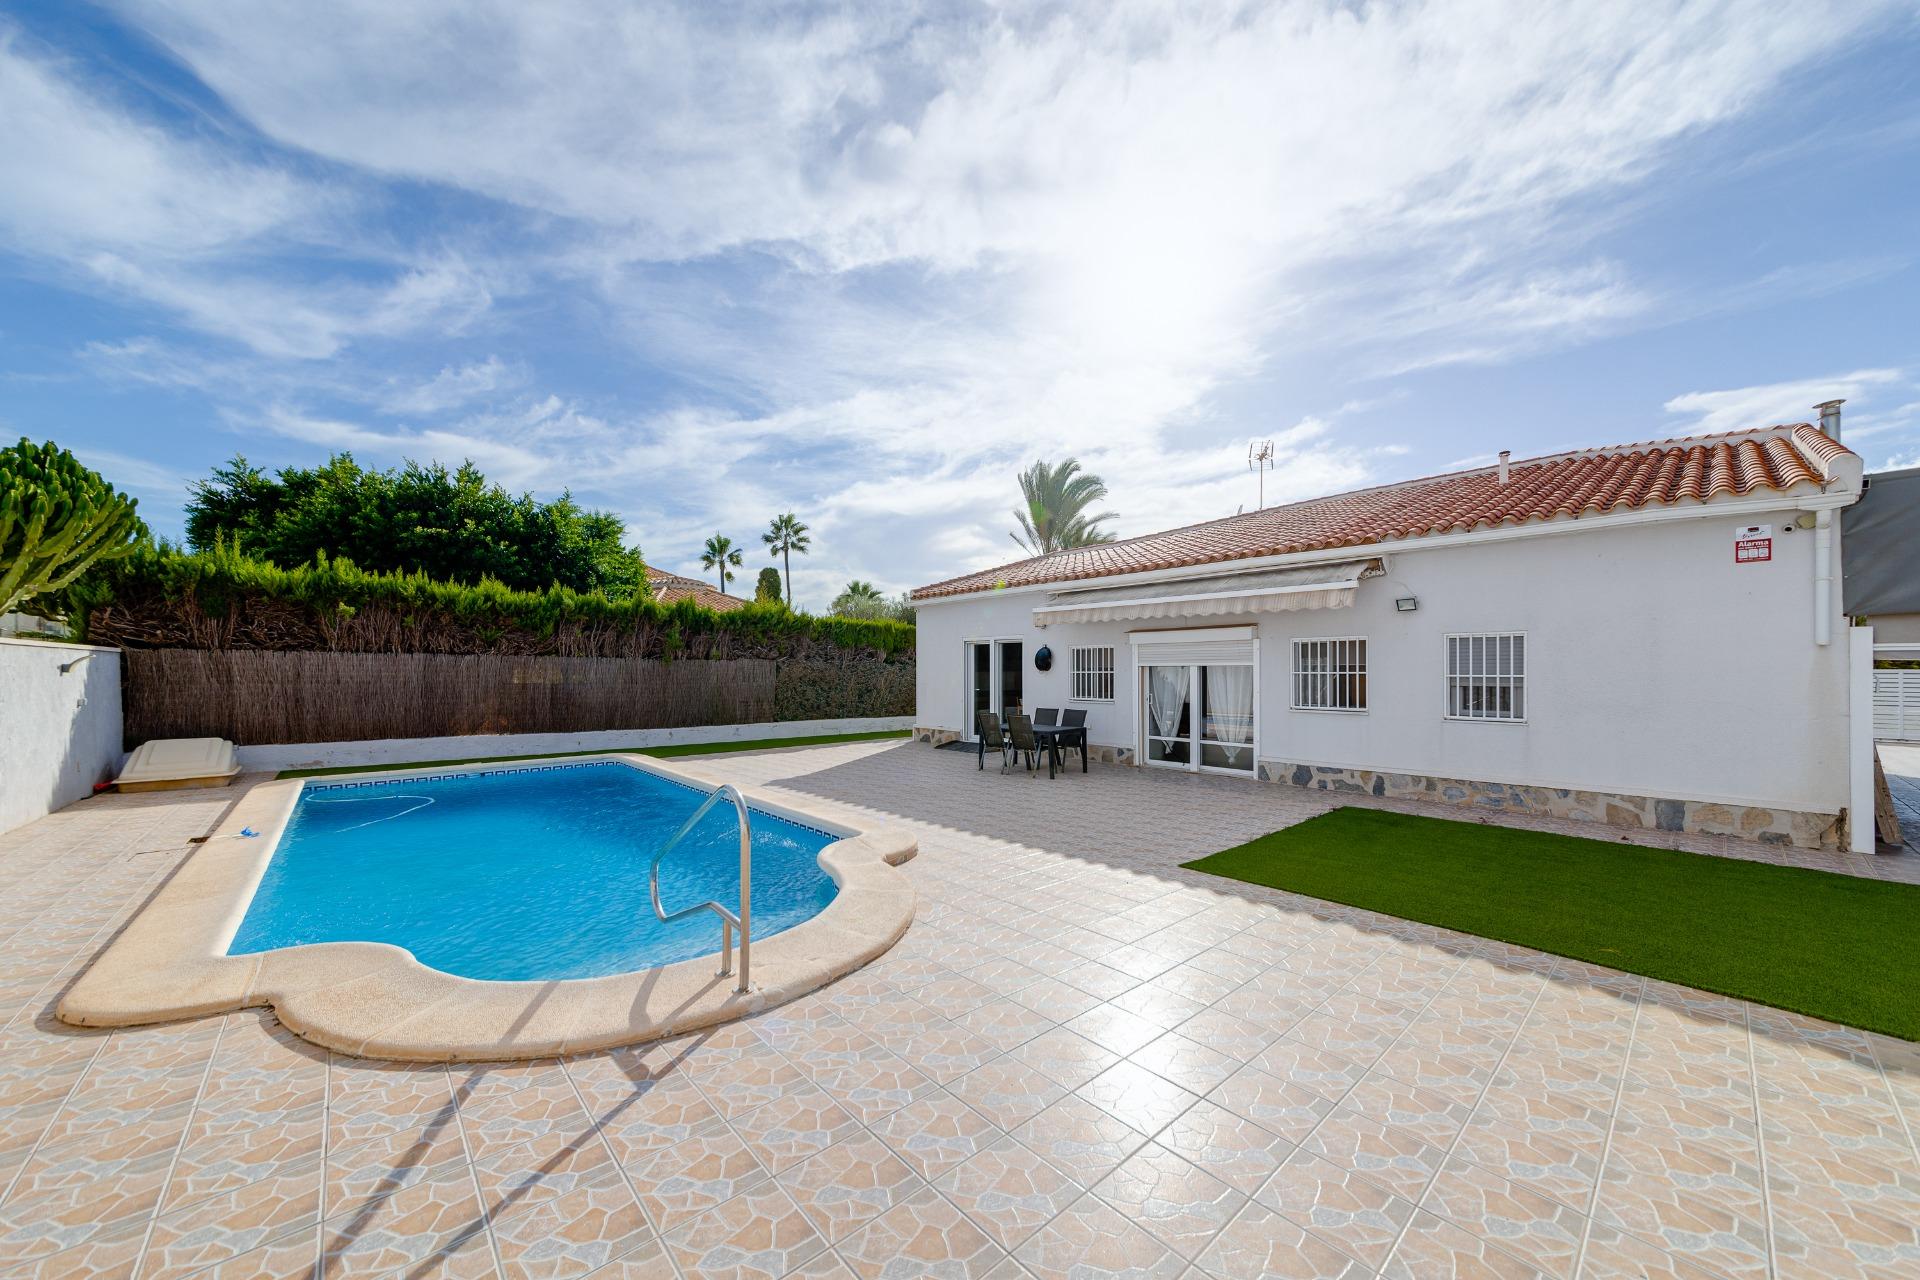 Mediterrane vrijstaande villa te koop in de exclusieve woonwijk Torreta Florida in Torrevieja.